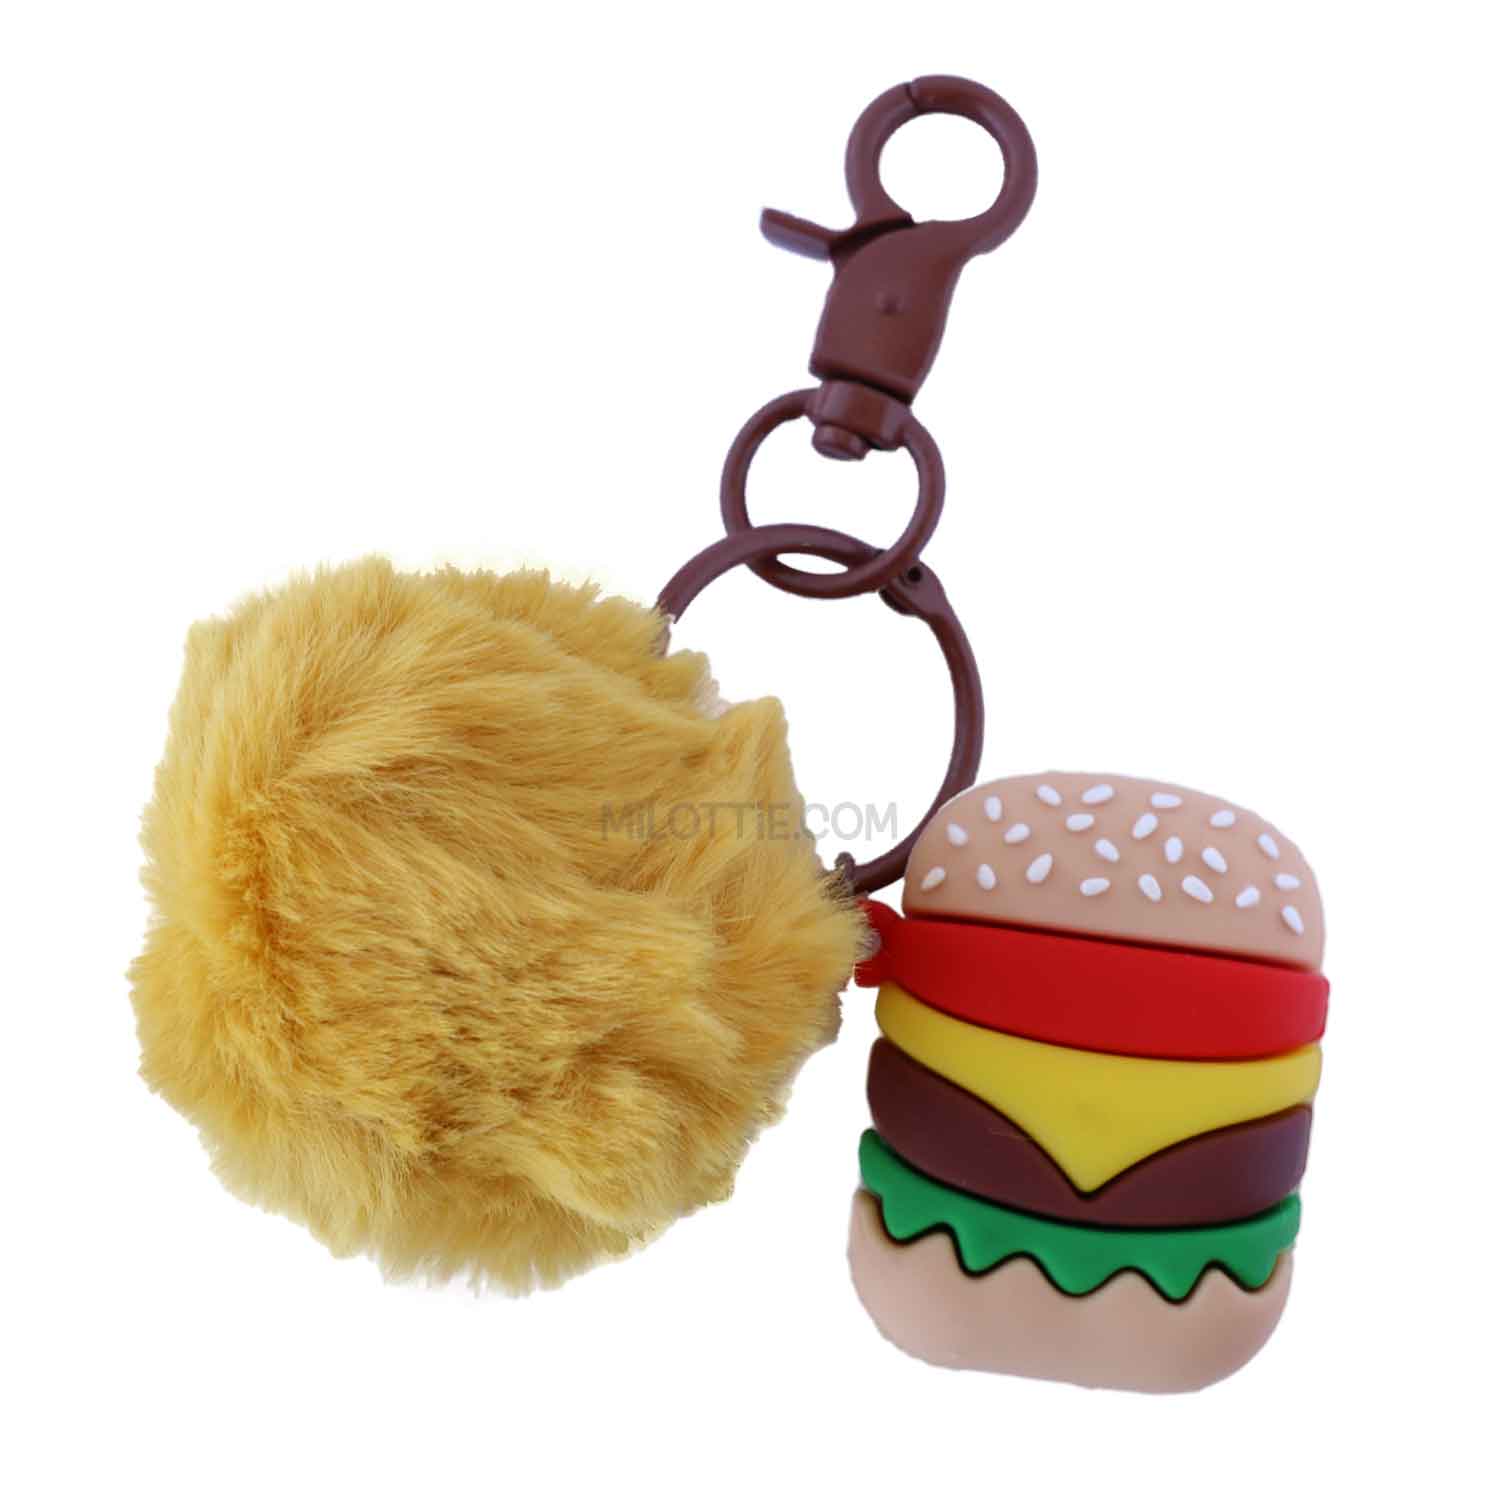 Cheese Burger Key Chain